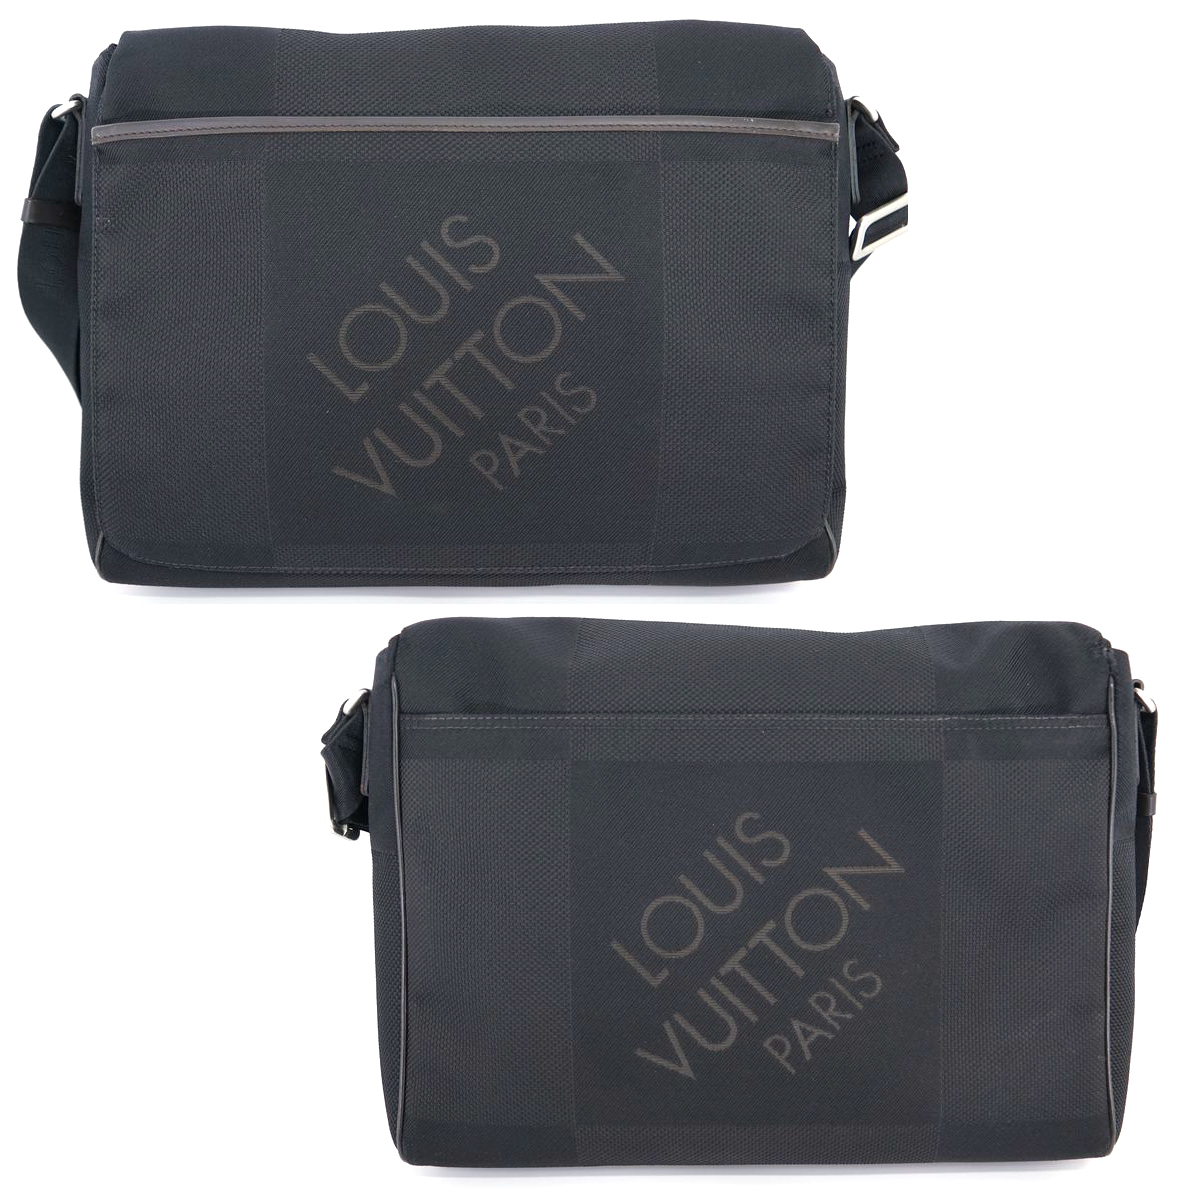 【美品】Louis Vuitton ダミエジェアン メサジェNM ショルダーバッグ 鞄 ノワール 黒 DAMIERGEANT メンズ レディース ジュアン M93225_画像2